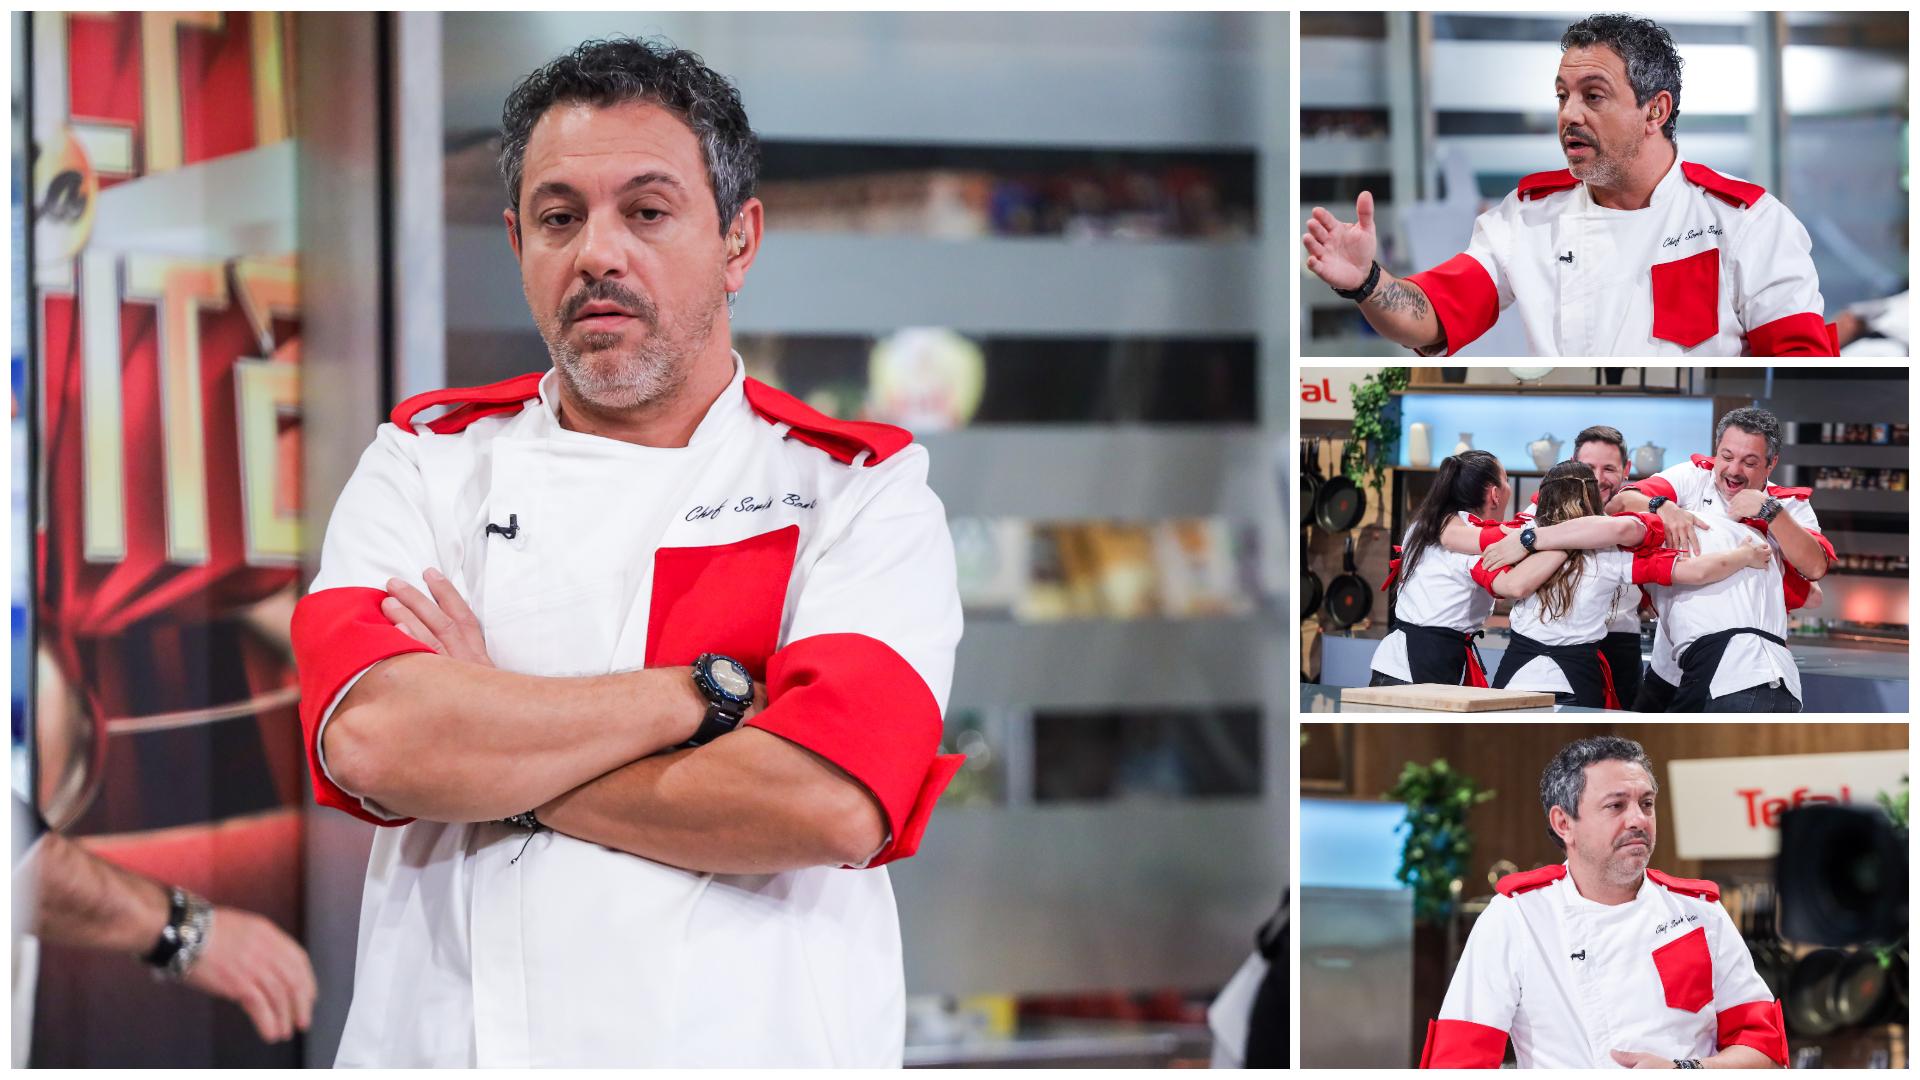 Colaj cu chef Sorin Bontea și concurenții din echipa roșie în mai multe ipostaze la Chefi la cuțite